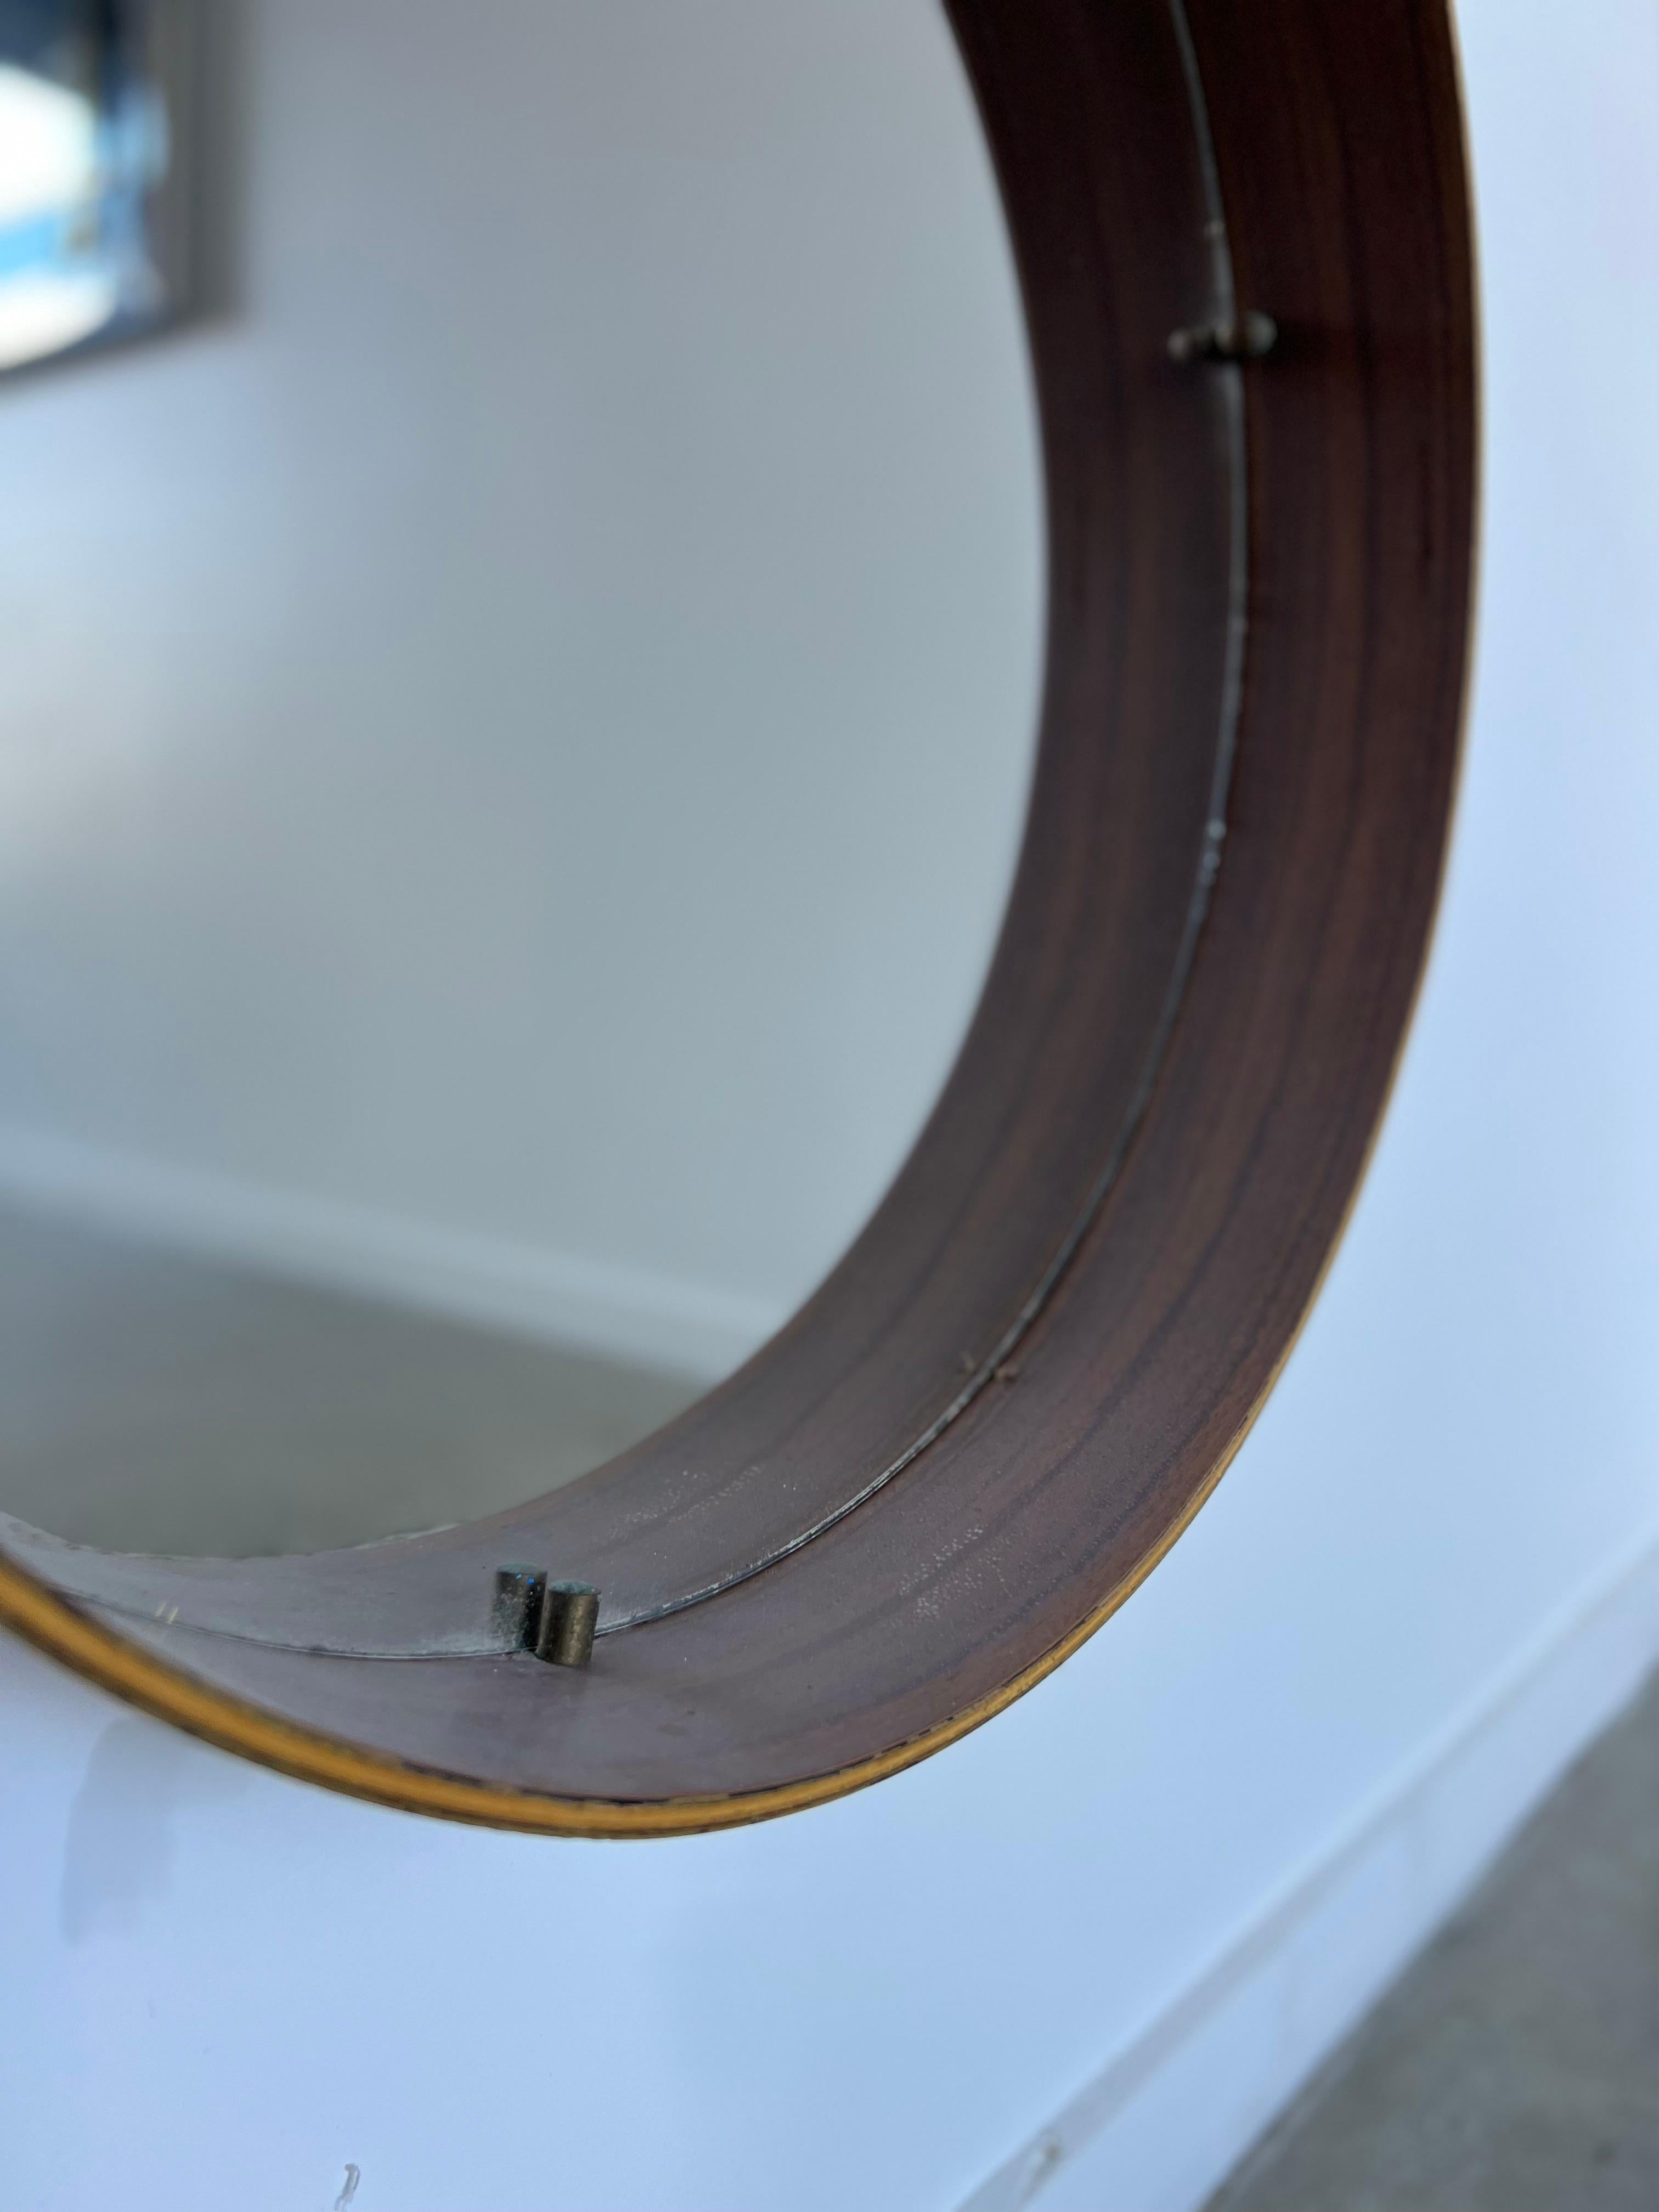 Runder italienischer Spiegel aus den 1950er Jahren mit Palisanderholzrahmen.
Sehr stilvoller runder italienischer Spiegel aus Holz, noch in sehr gutem Zustand, originales Spiegelglas.